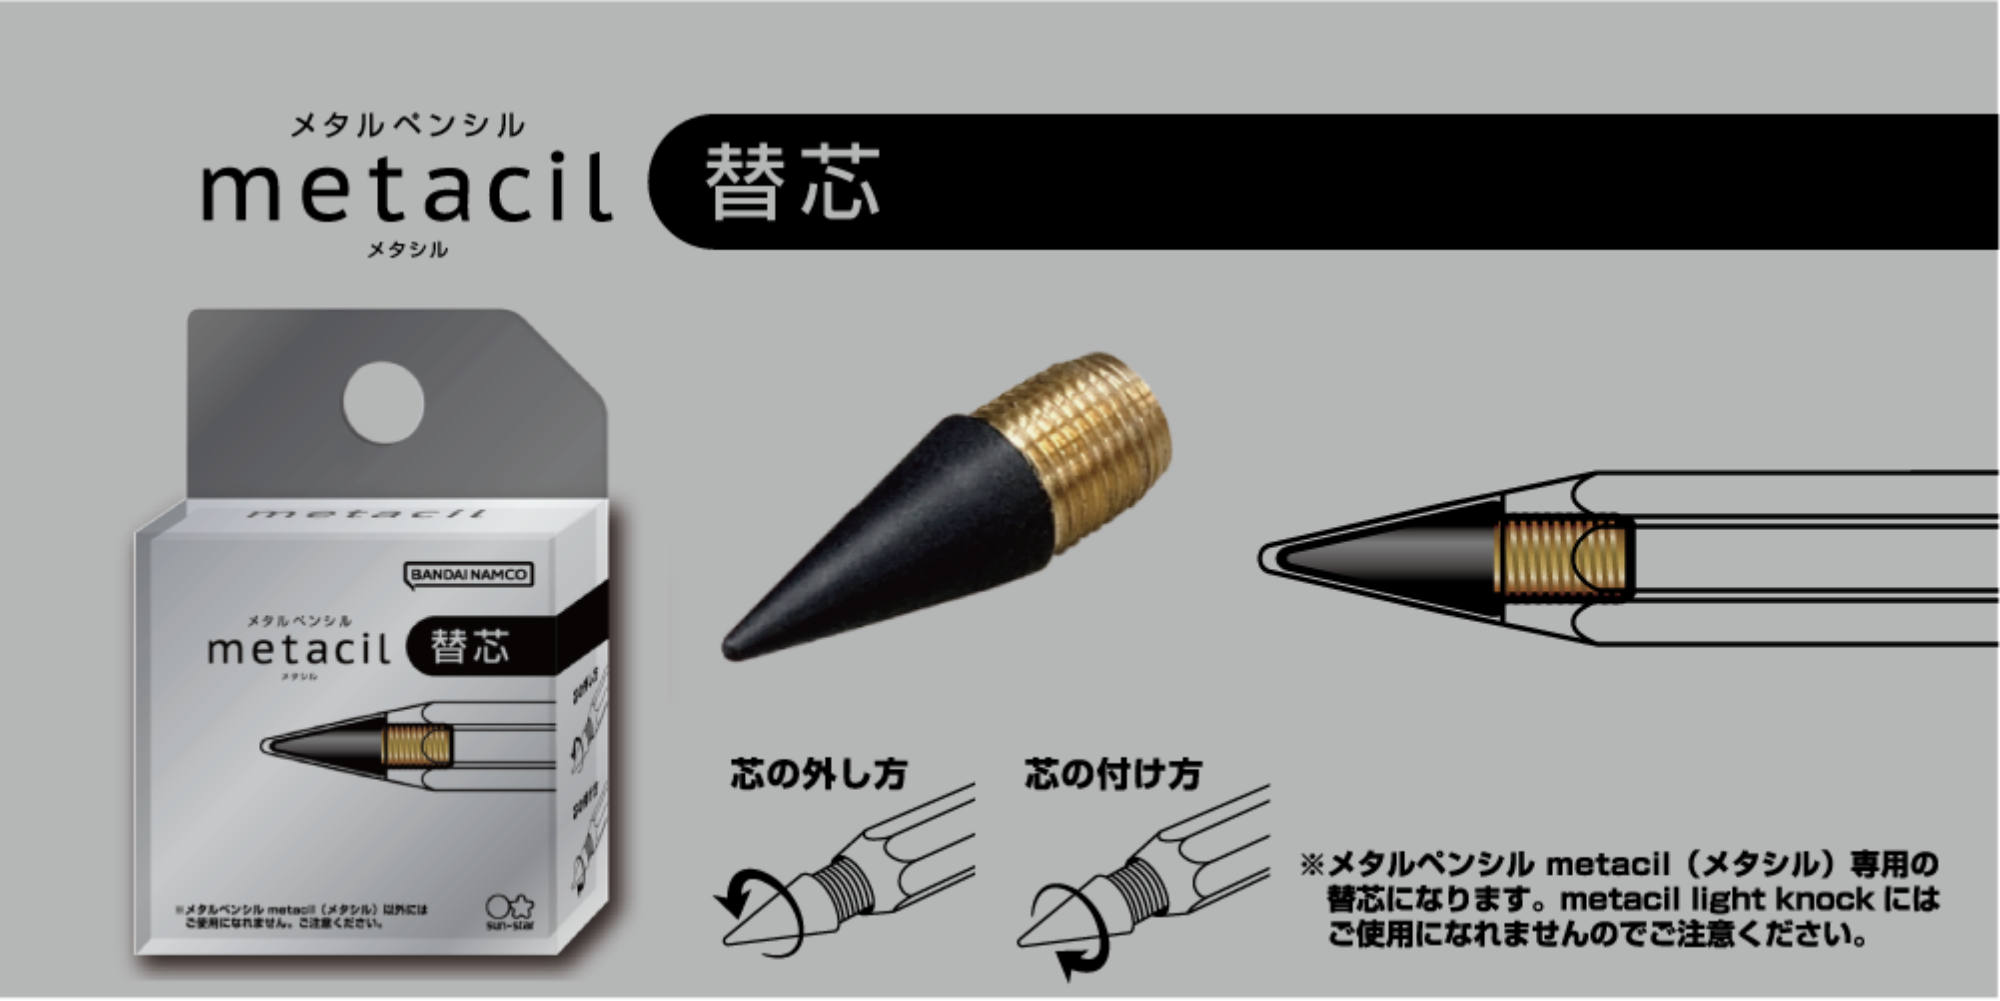  SUN-STAR Stationery S4482662 Metal Pencil, Metacil